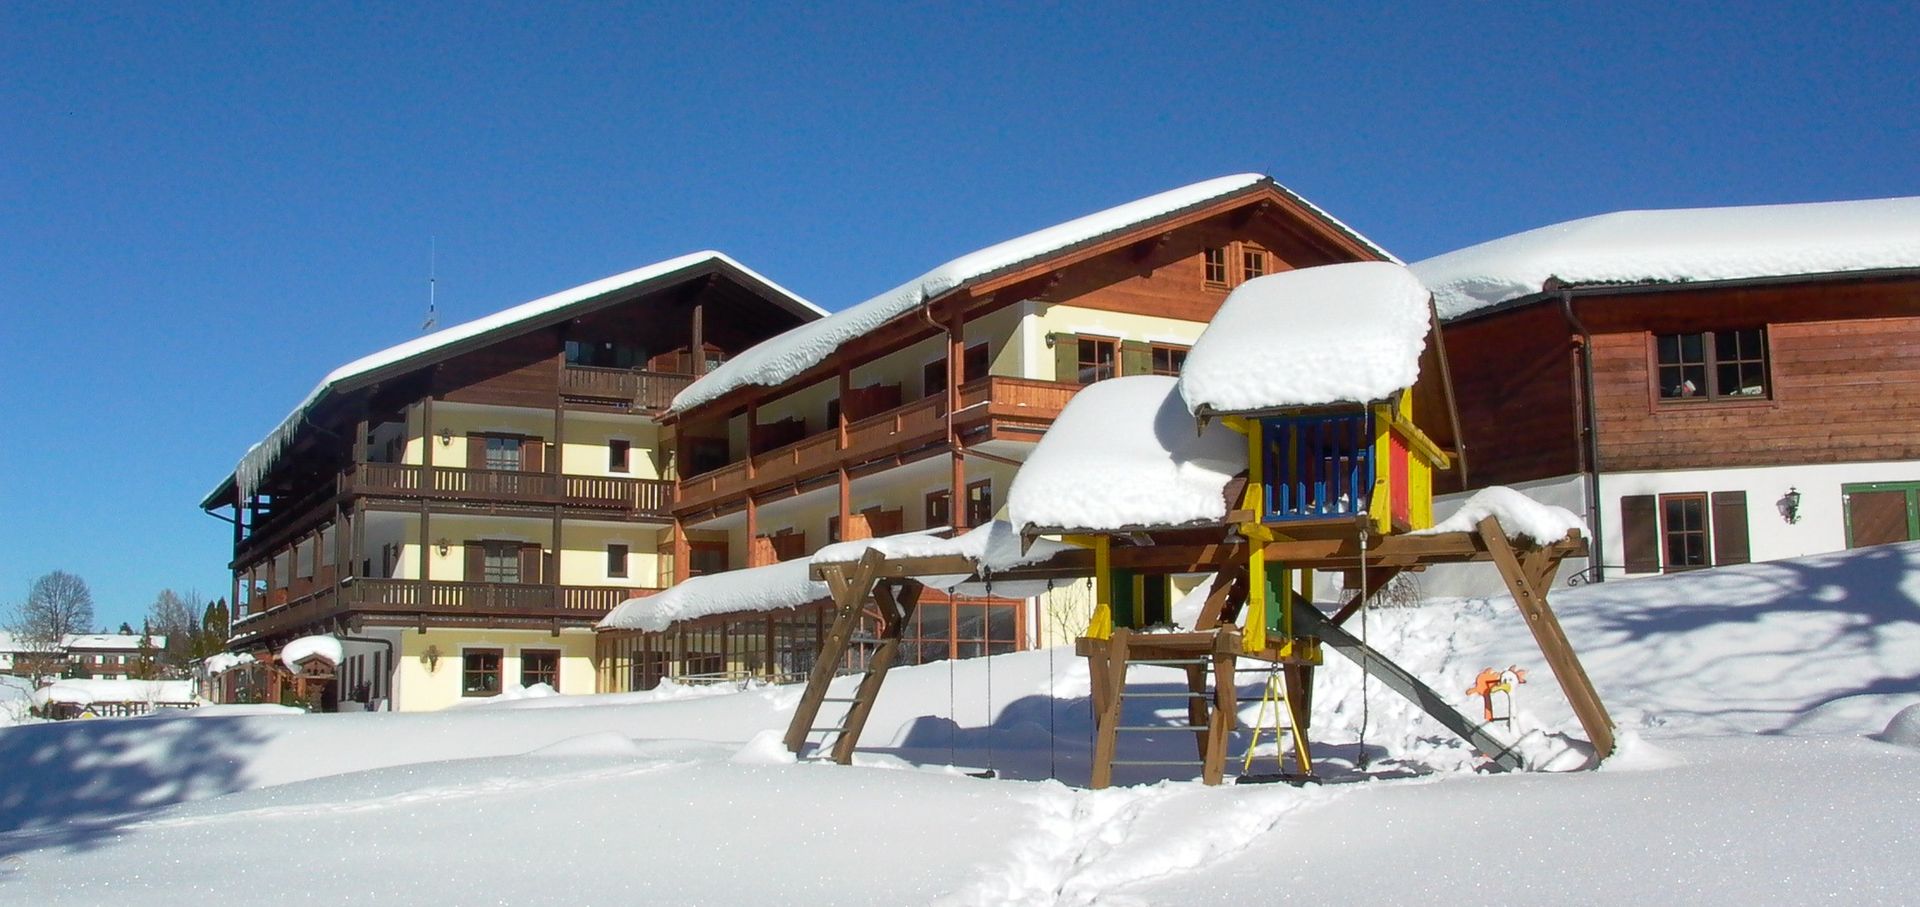 Meer info over Hotel Neuhäusl  bij Wintertrex